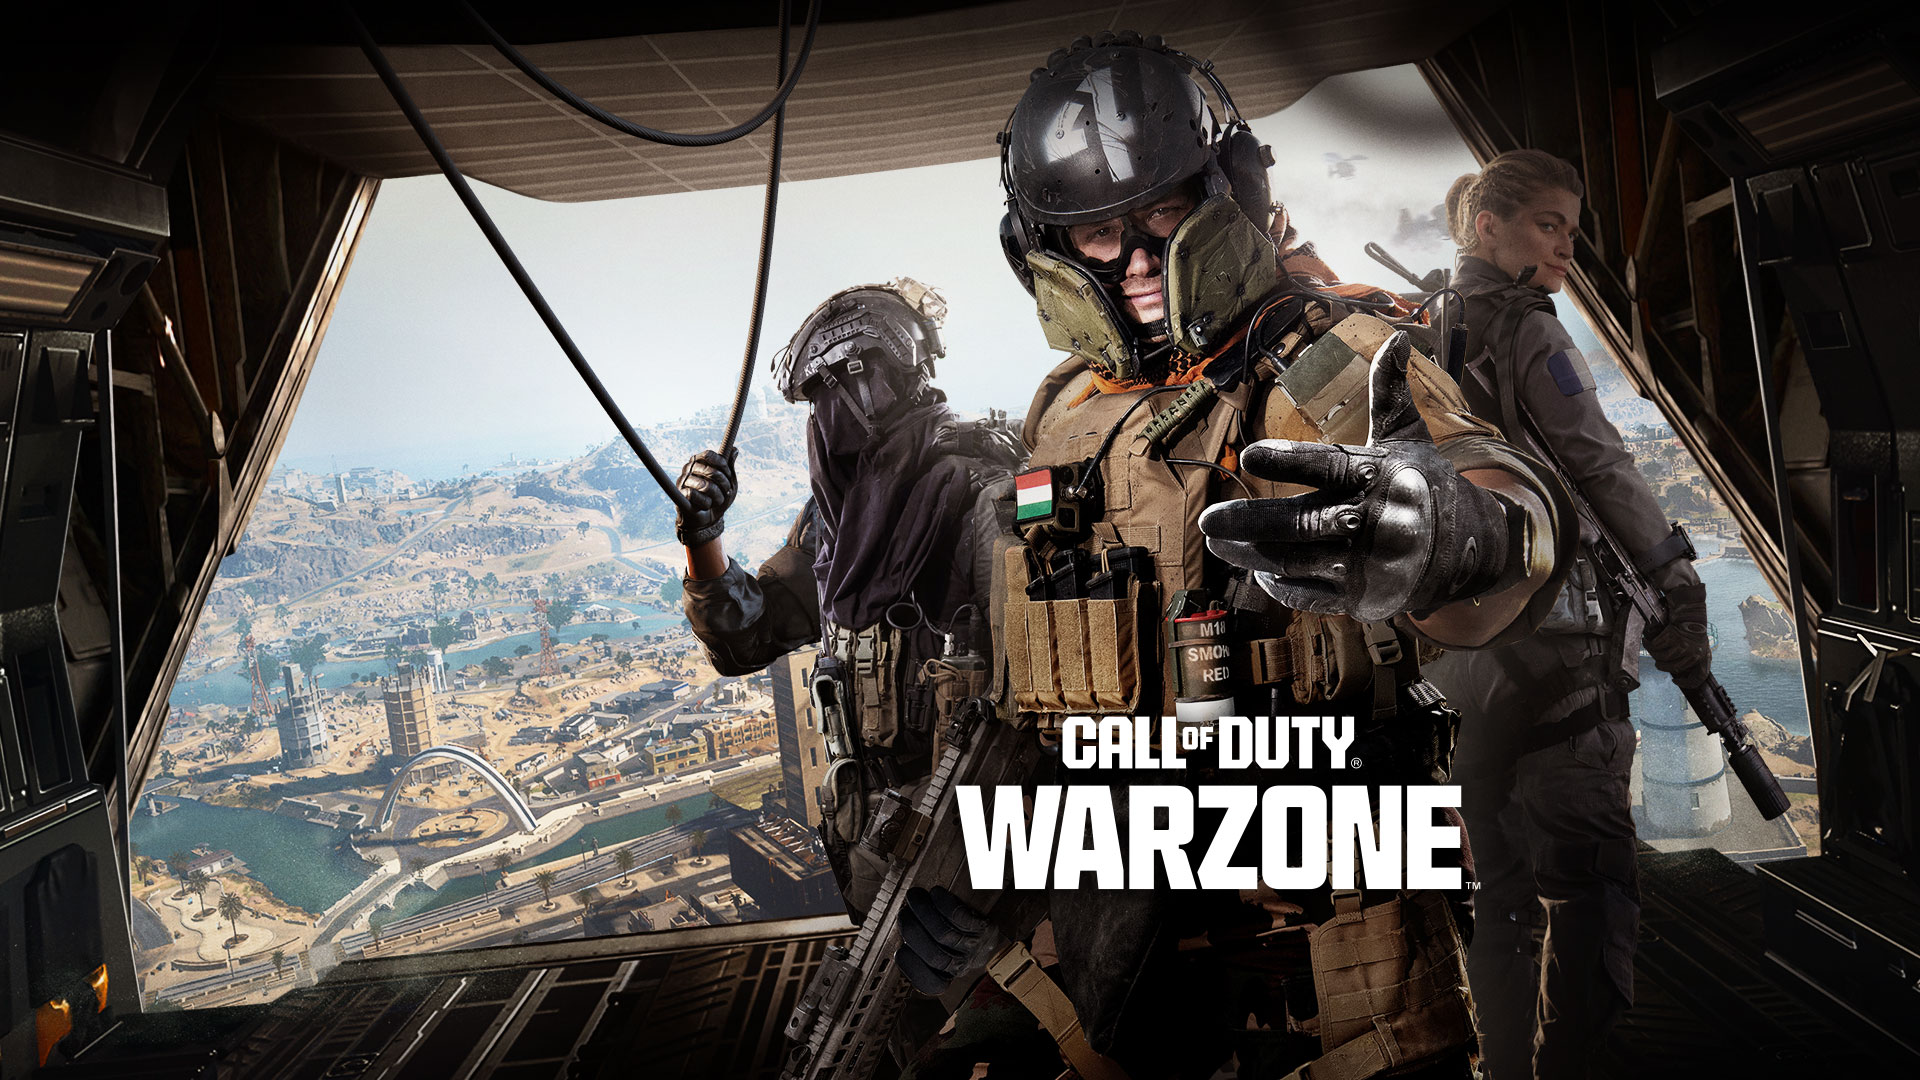 Call of Duty Warzone, lentokoneen takaosassa seisoo kolmikko, joka kutsuu sinut mukaan toimintaan.